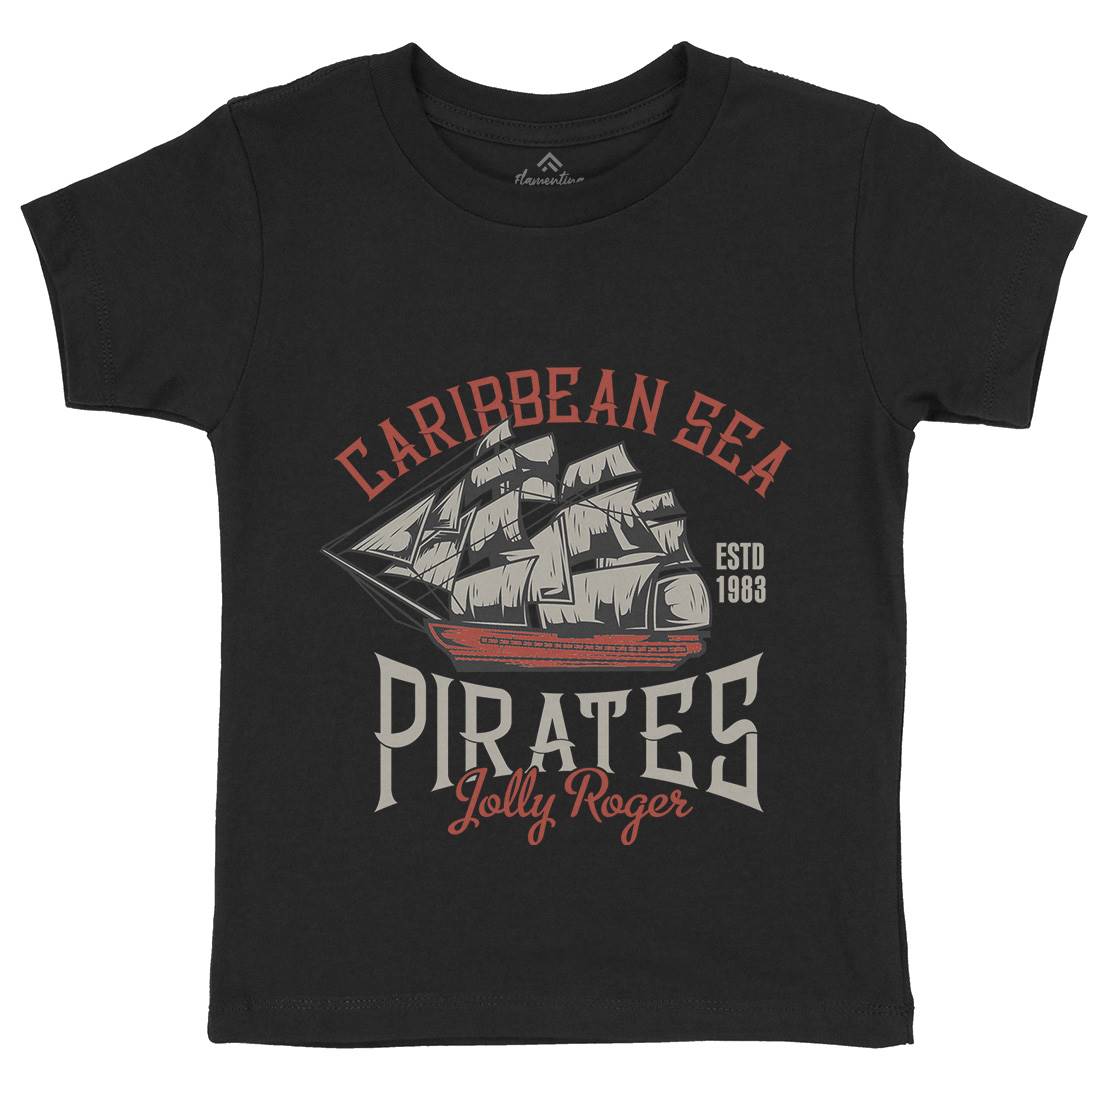 Pirate Kids Organic Crew Neck T-Shirt Navy B157